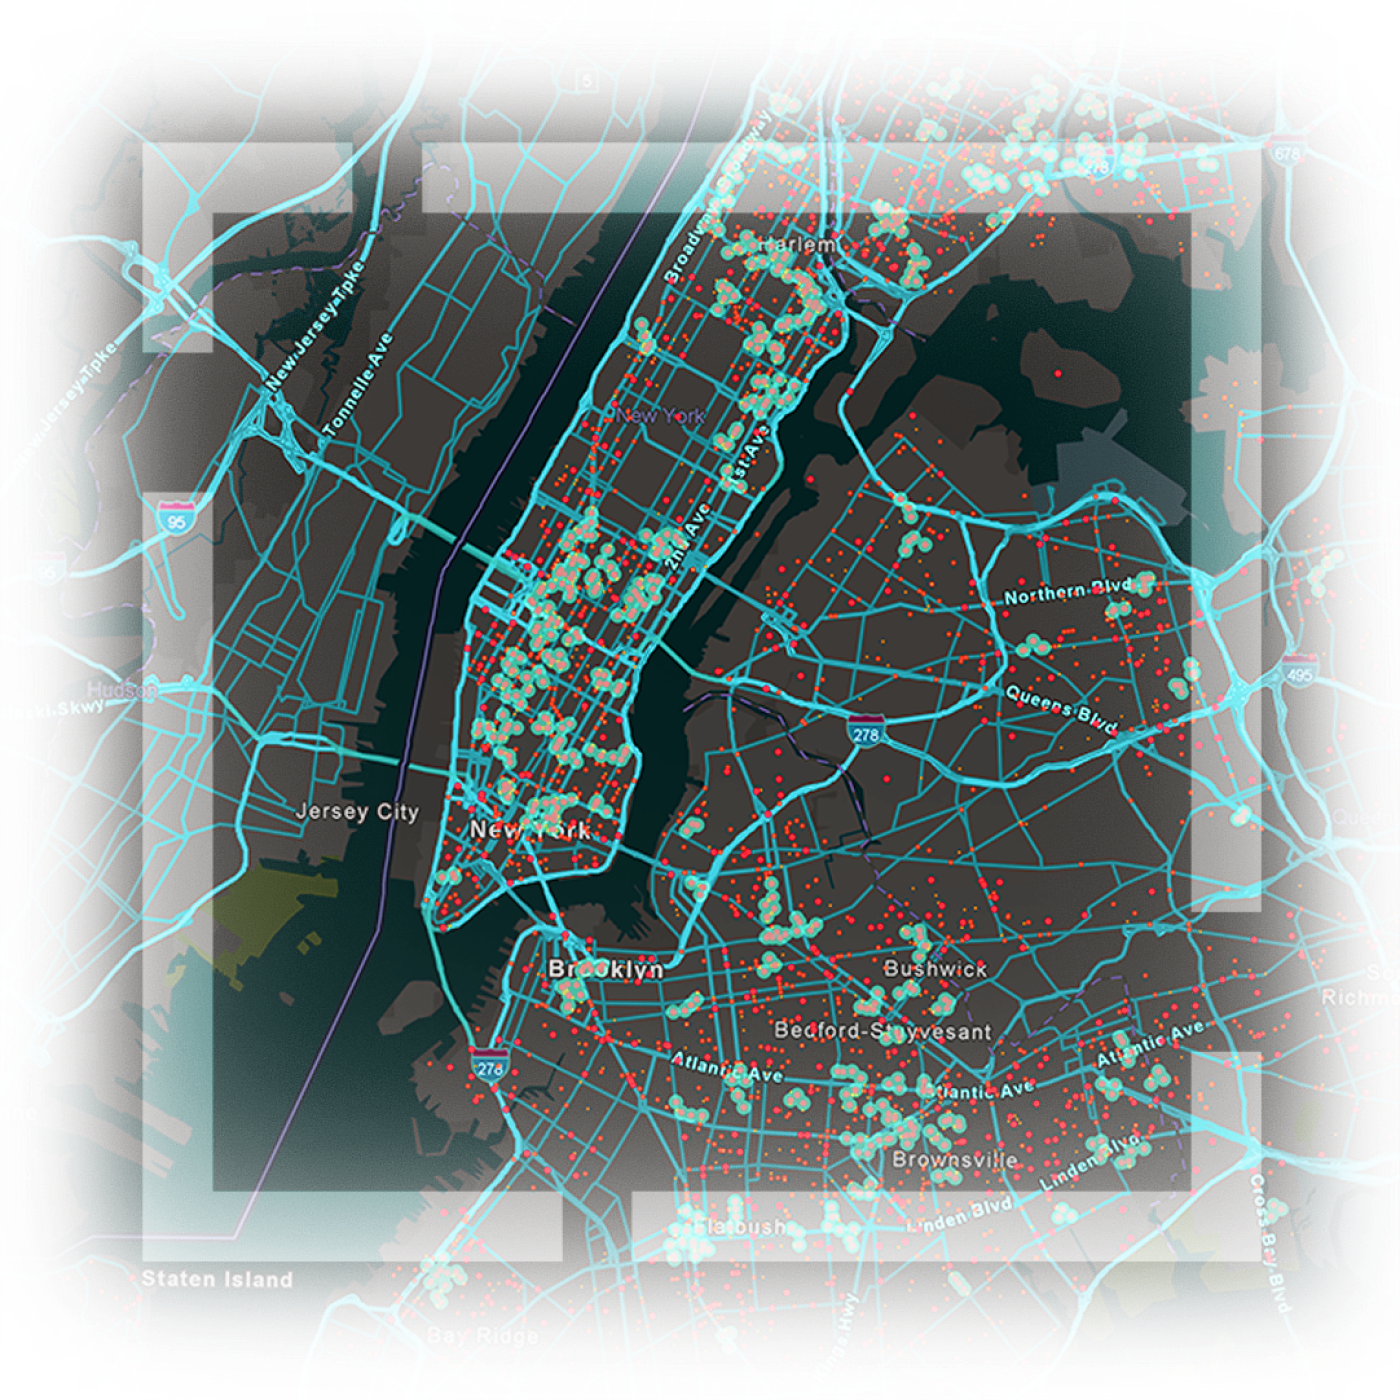 Plan de la ville de New York illustrant les autoroutes, les routes et la localisation de ressources mis en évidence sous forme de lignes bleues et rougesPlan de la ville de New York illustrant les autoroutes, les routes et la localisation de ressources mis en évidence sous forme de lignes bleues et rouges